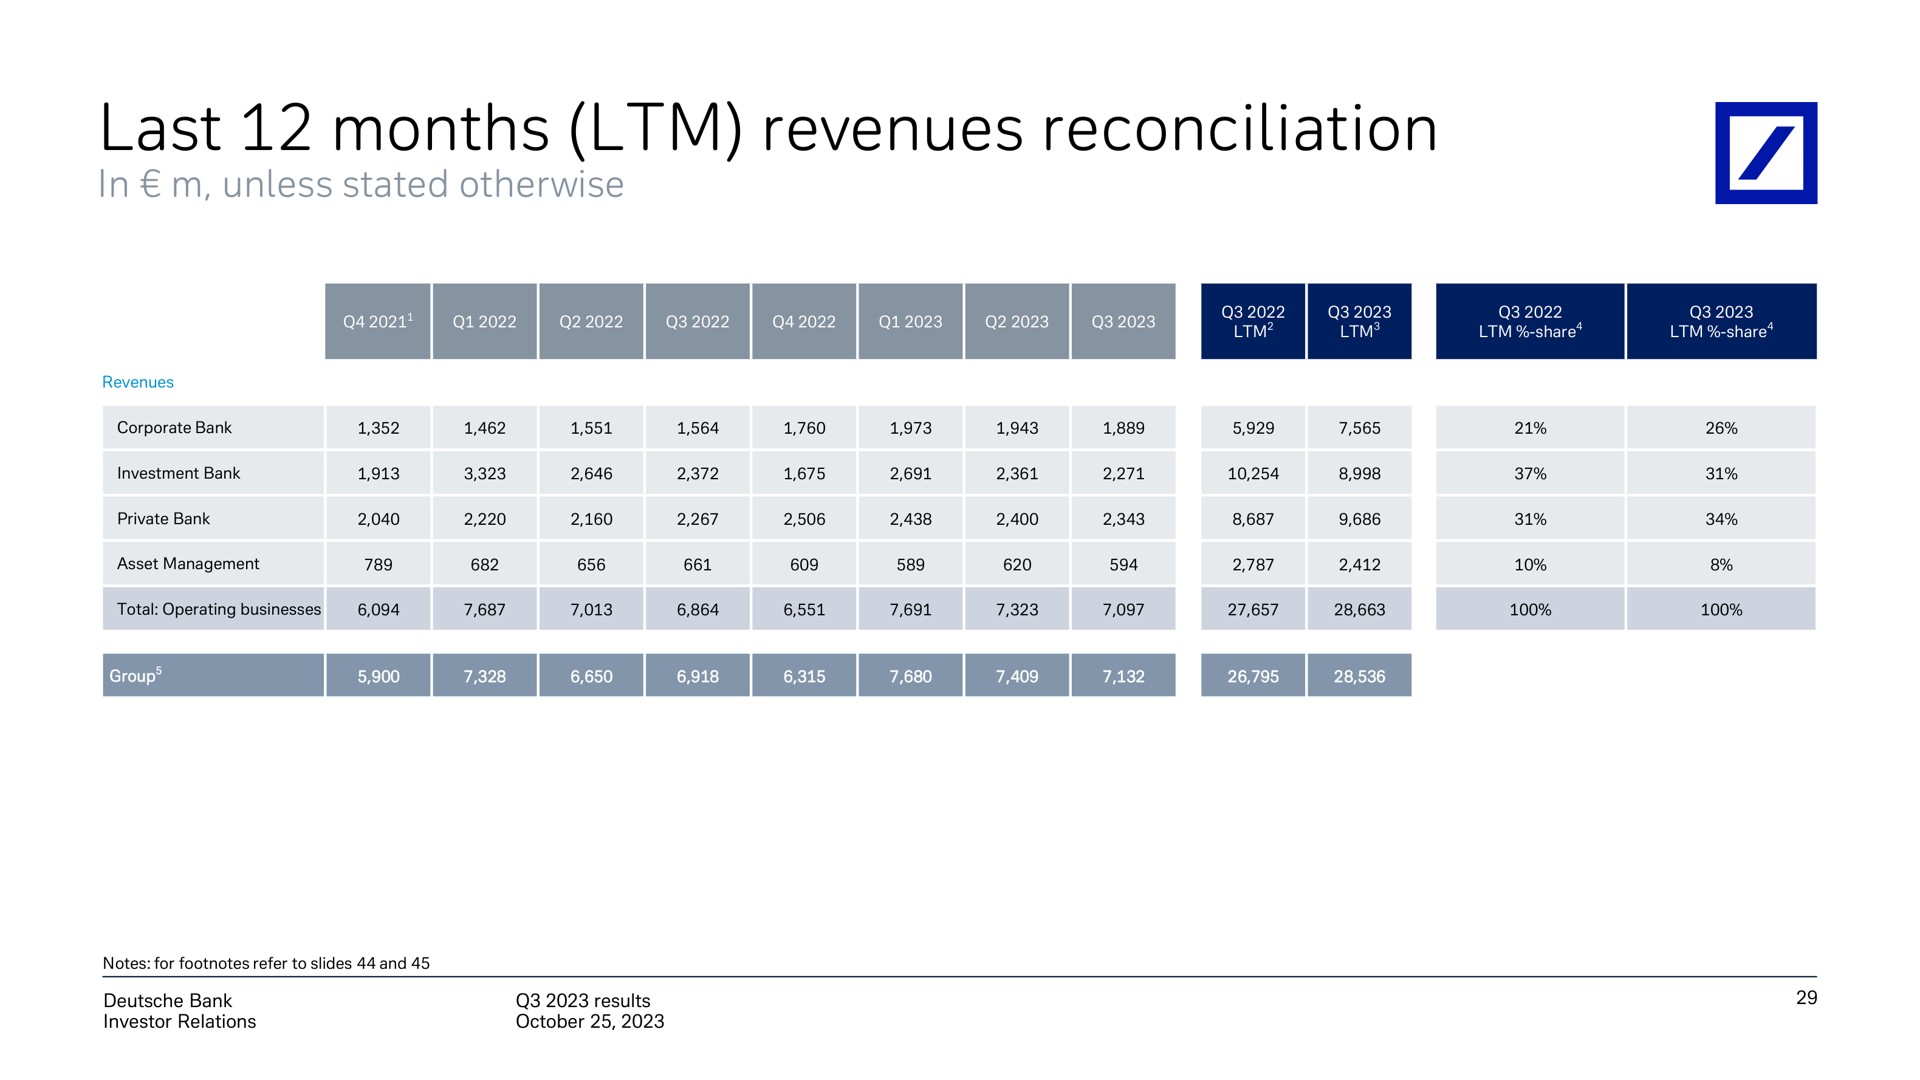 last months revenues reconciliation | Deutsche Bank